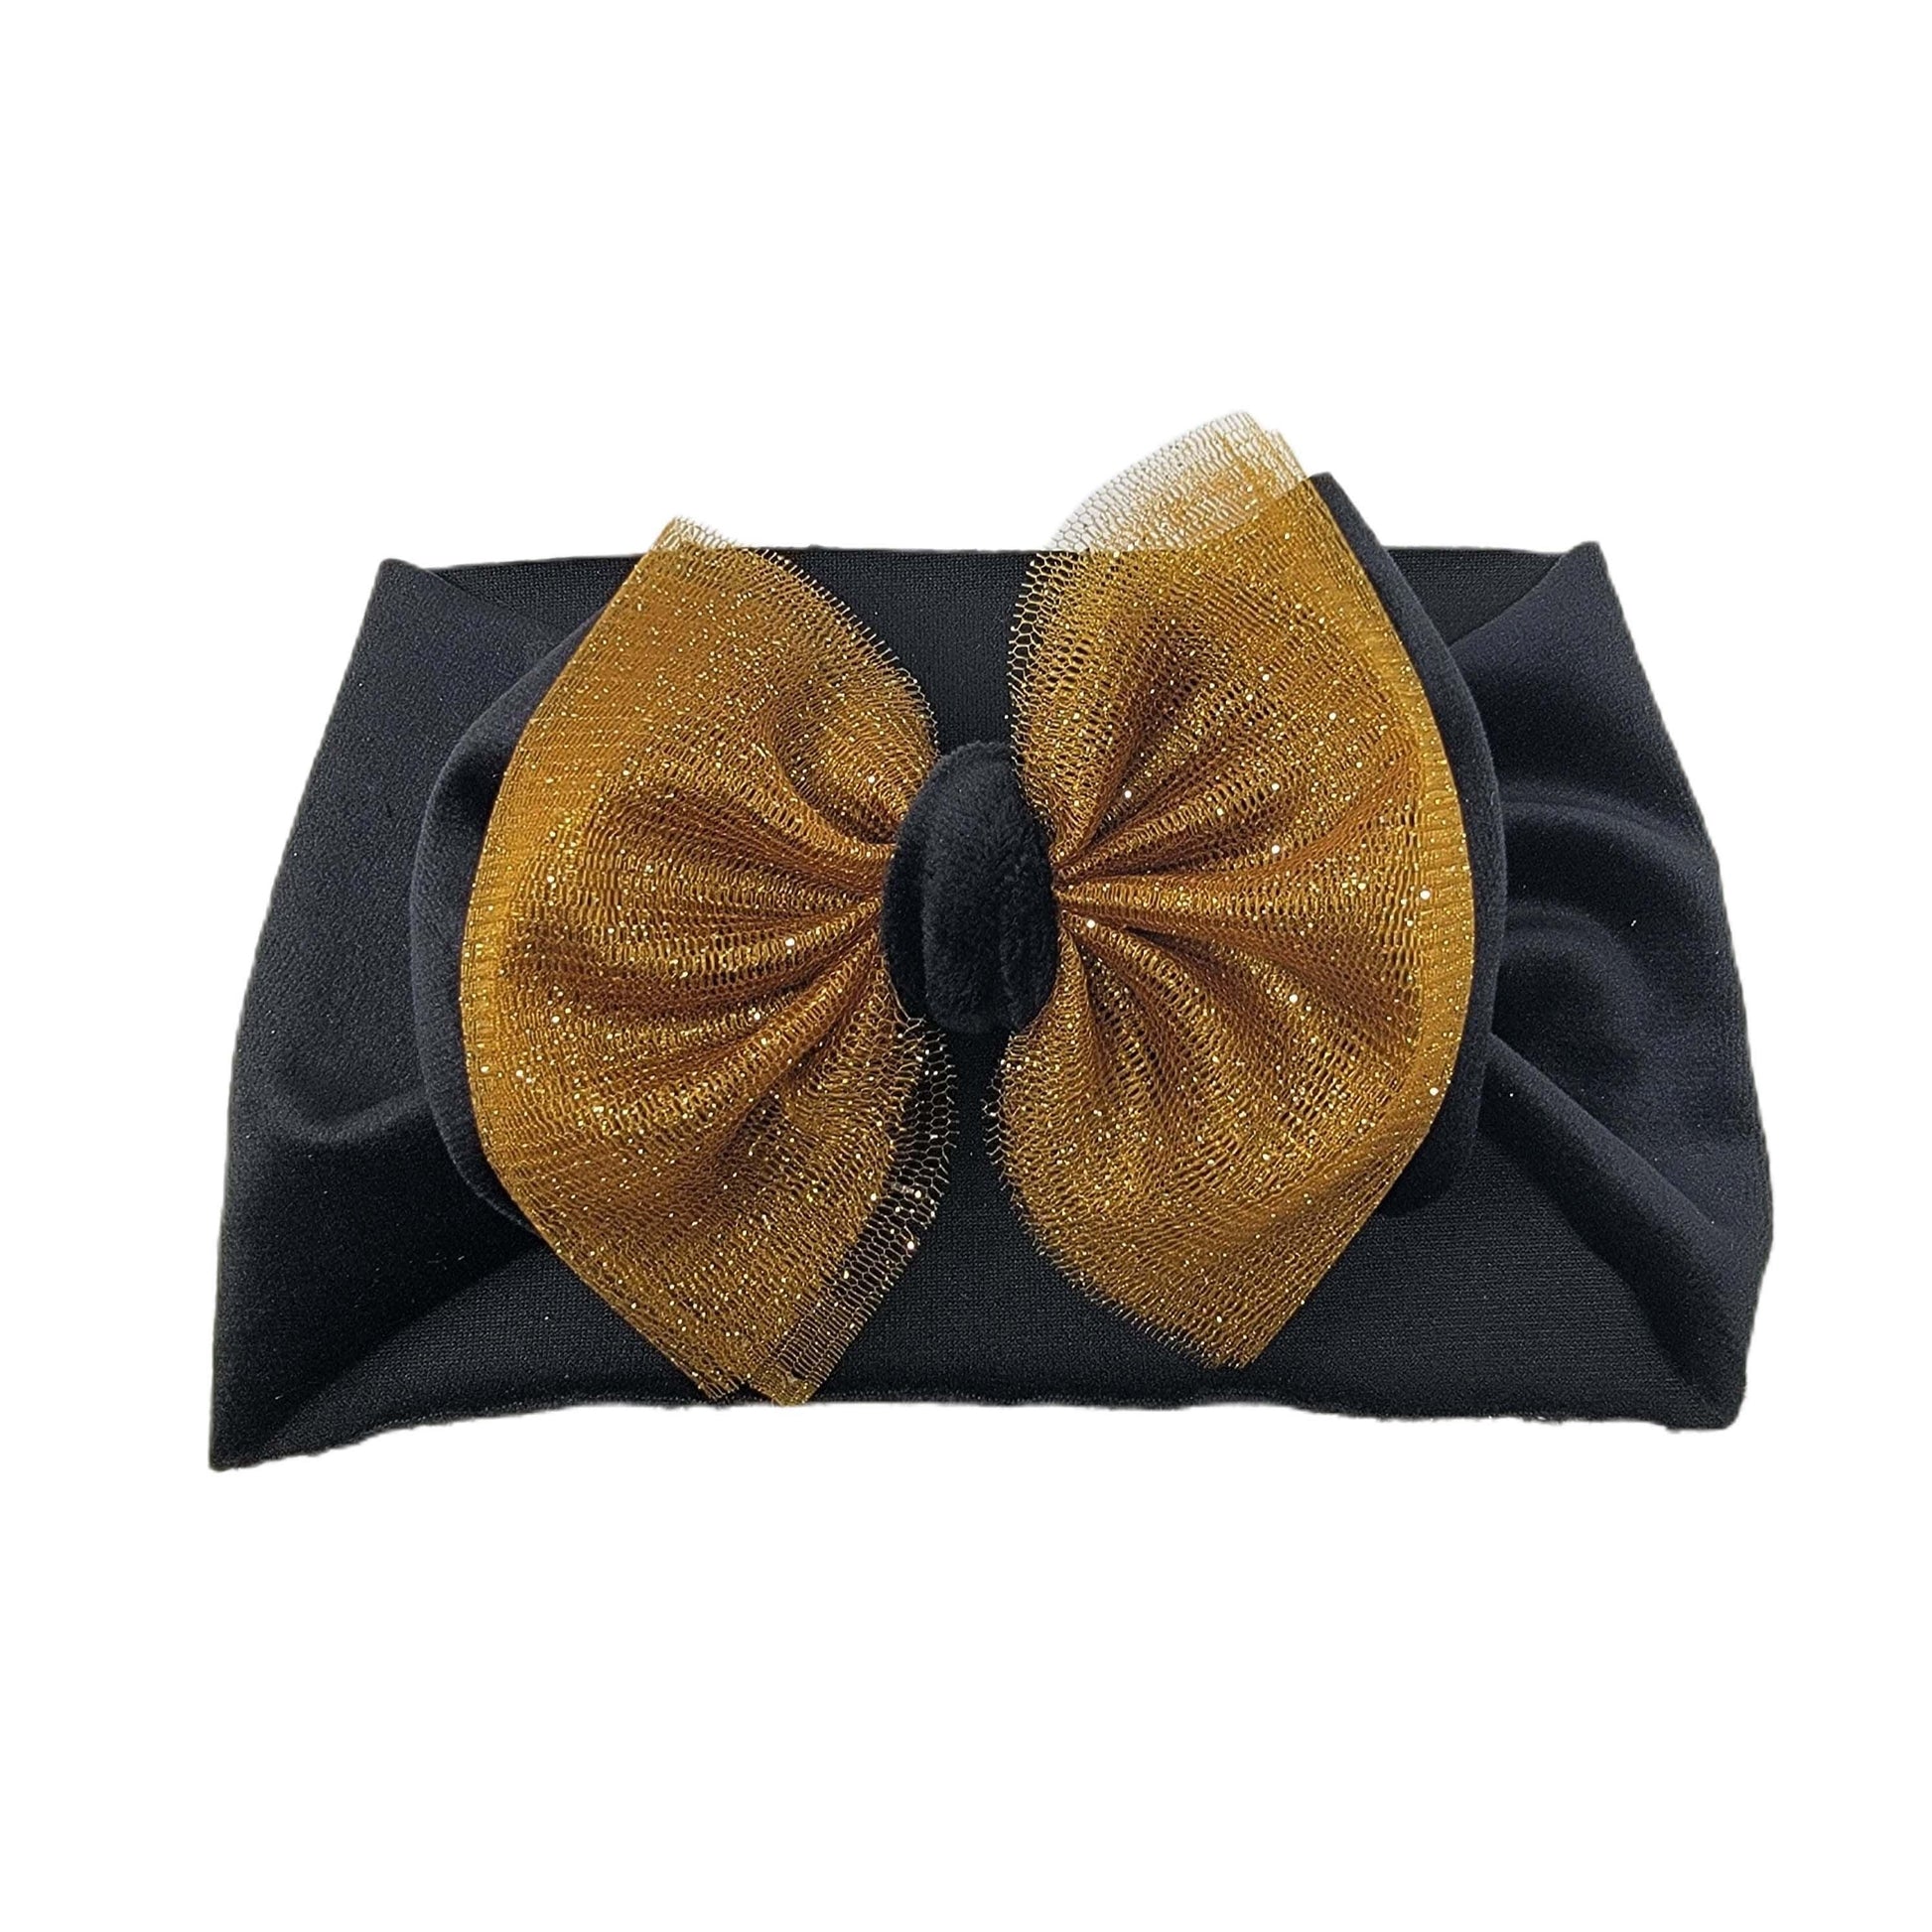 Gold Tulle & Black Velvet Double Stack Fabric Headwrap